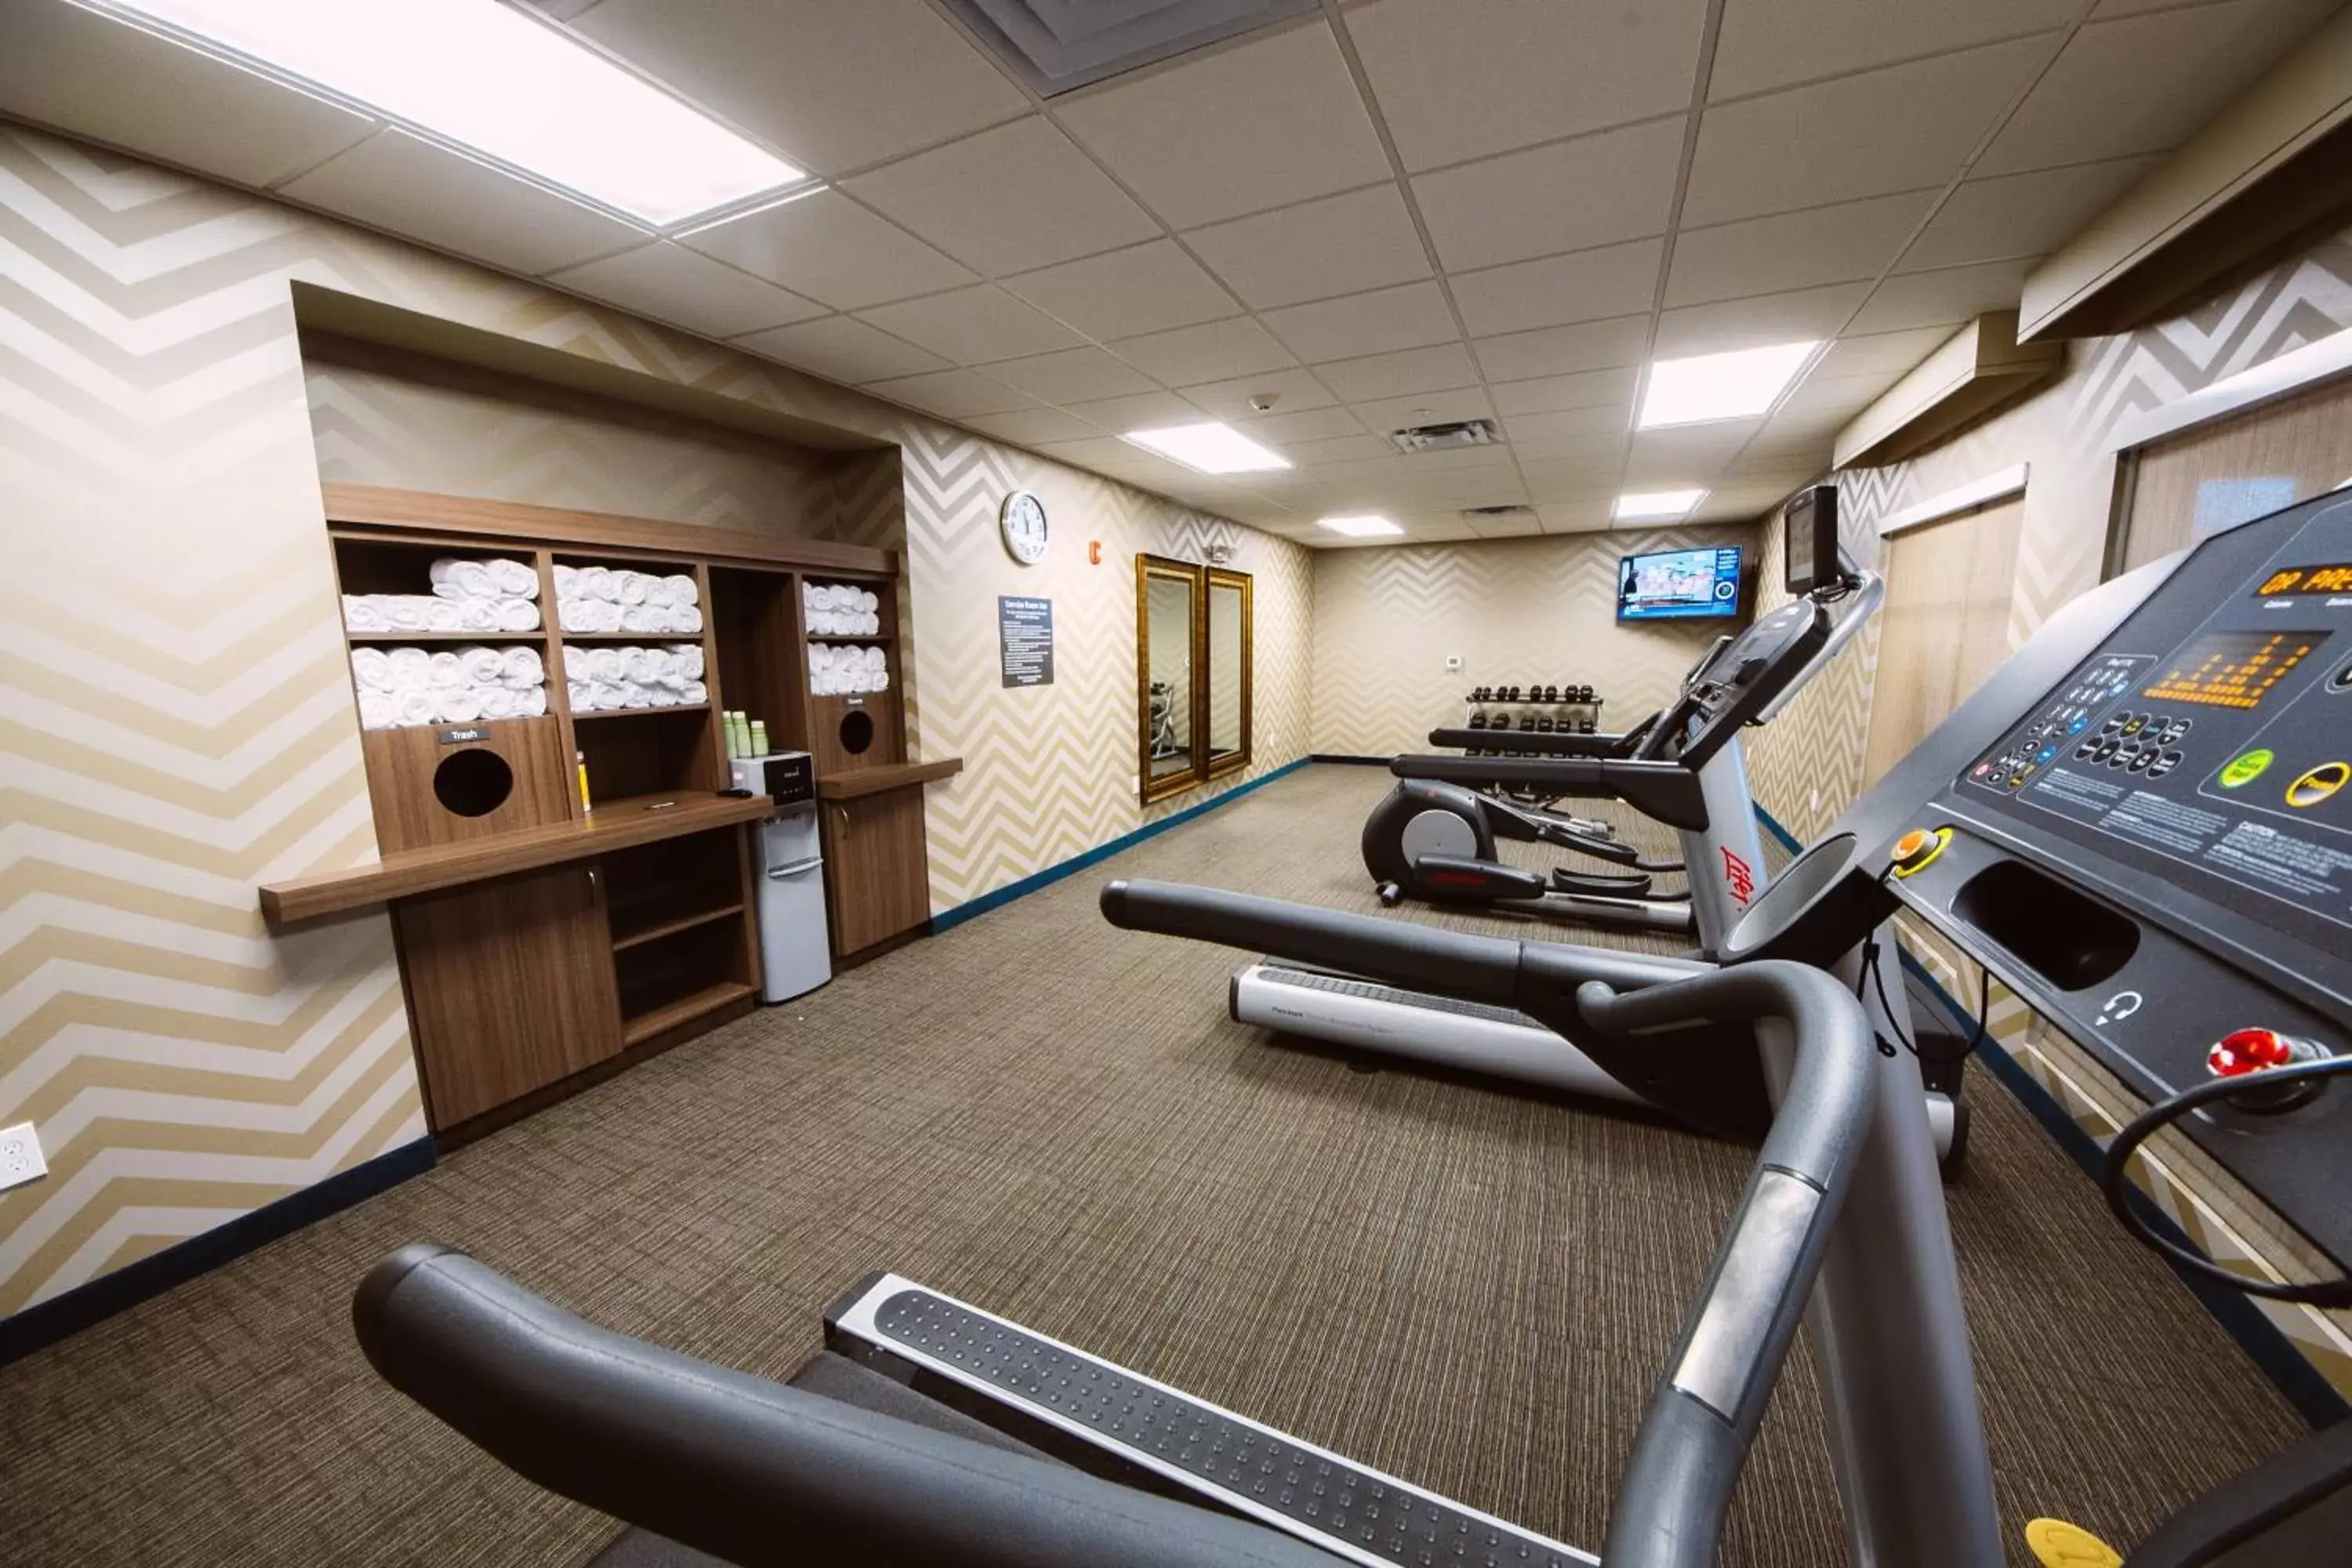 Fitness centre/facilities, Fitness Center/Facilities in Residence Inn by Marriott Harlingen